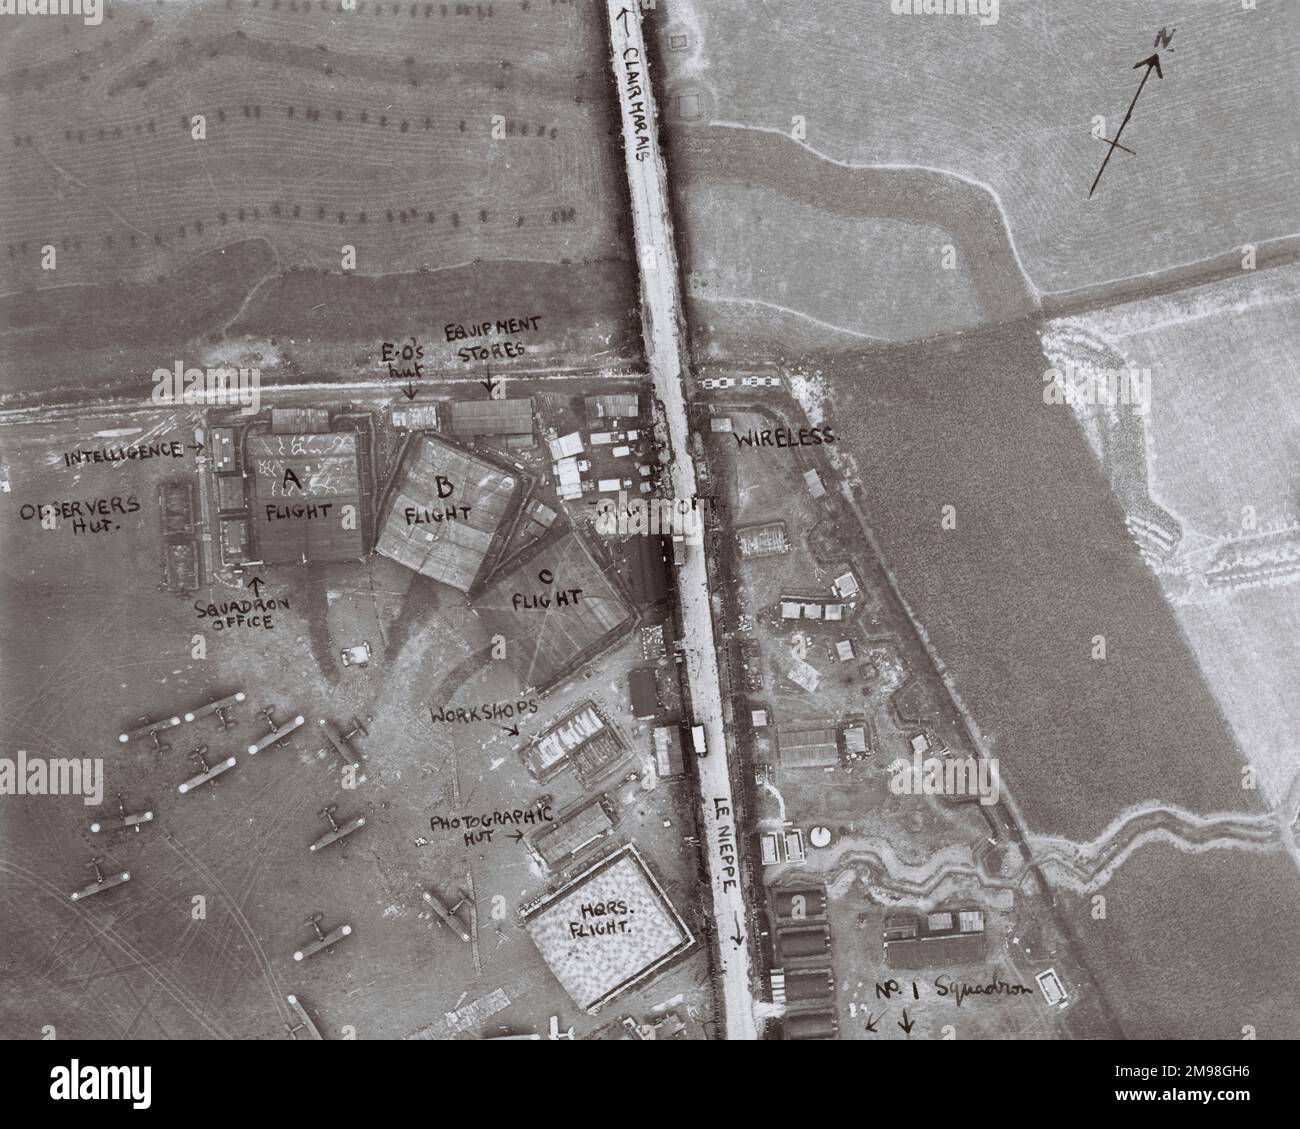 Vue aérienne d'une partie de l'aérodrome de Clairmarais, pas de Calais, Nord de la France, avec des annotations manuscrites, montrant des bâtiments et des avions. Banque D'Images